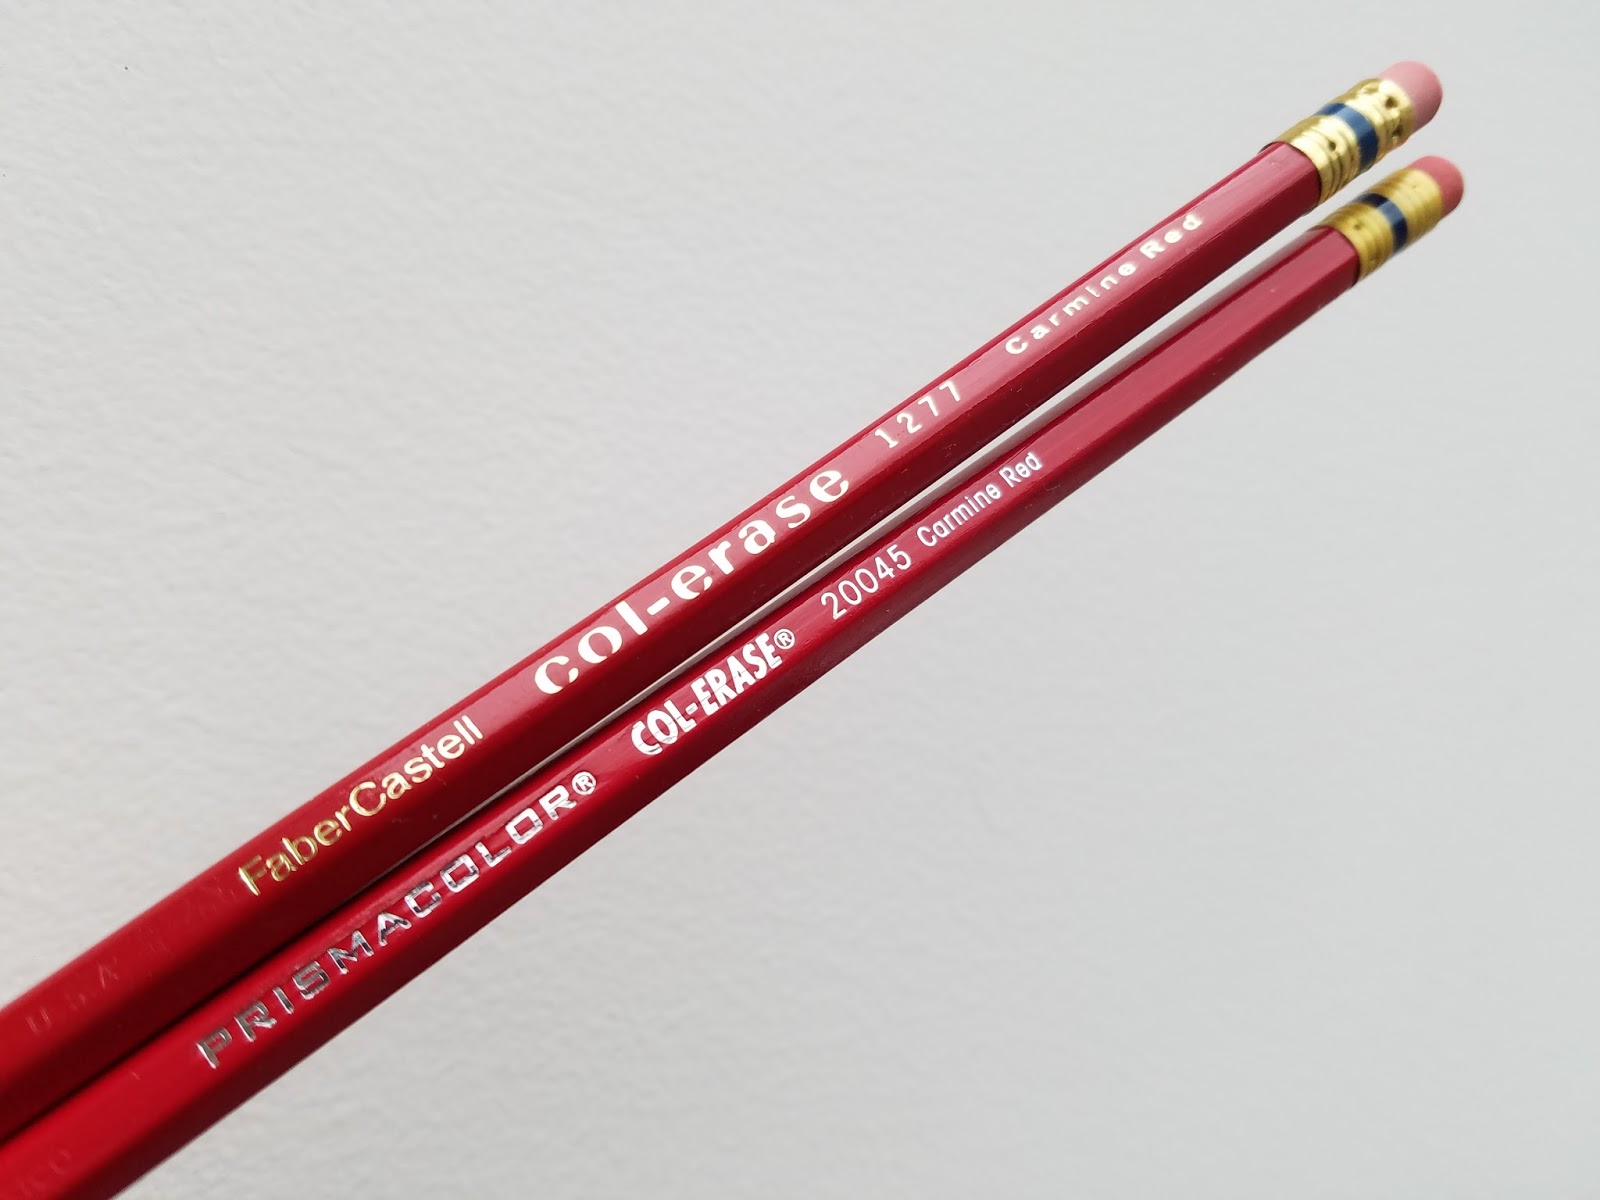 Col-Erase Col-Erase Pencils